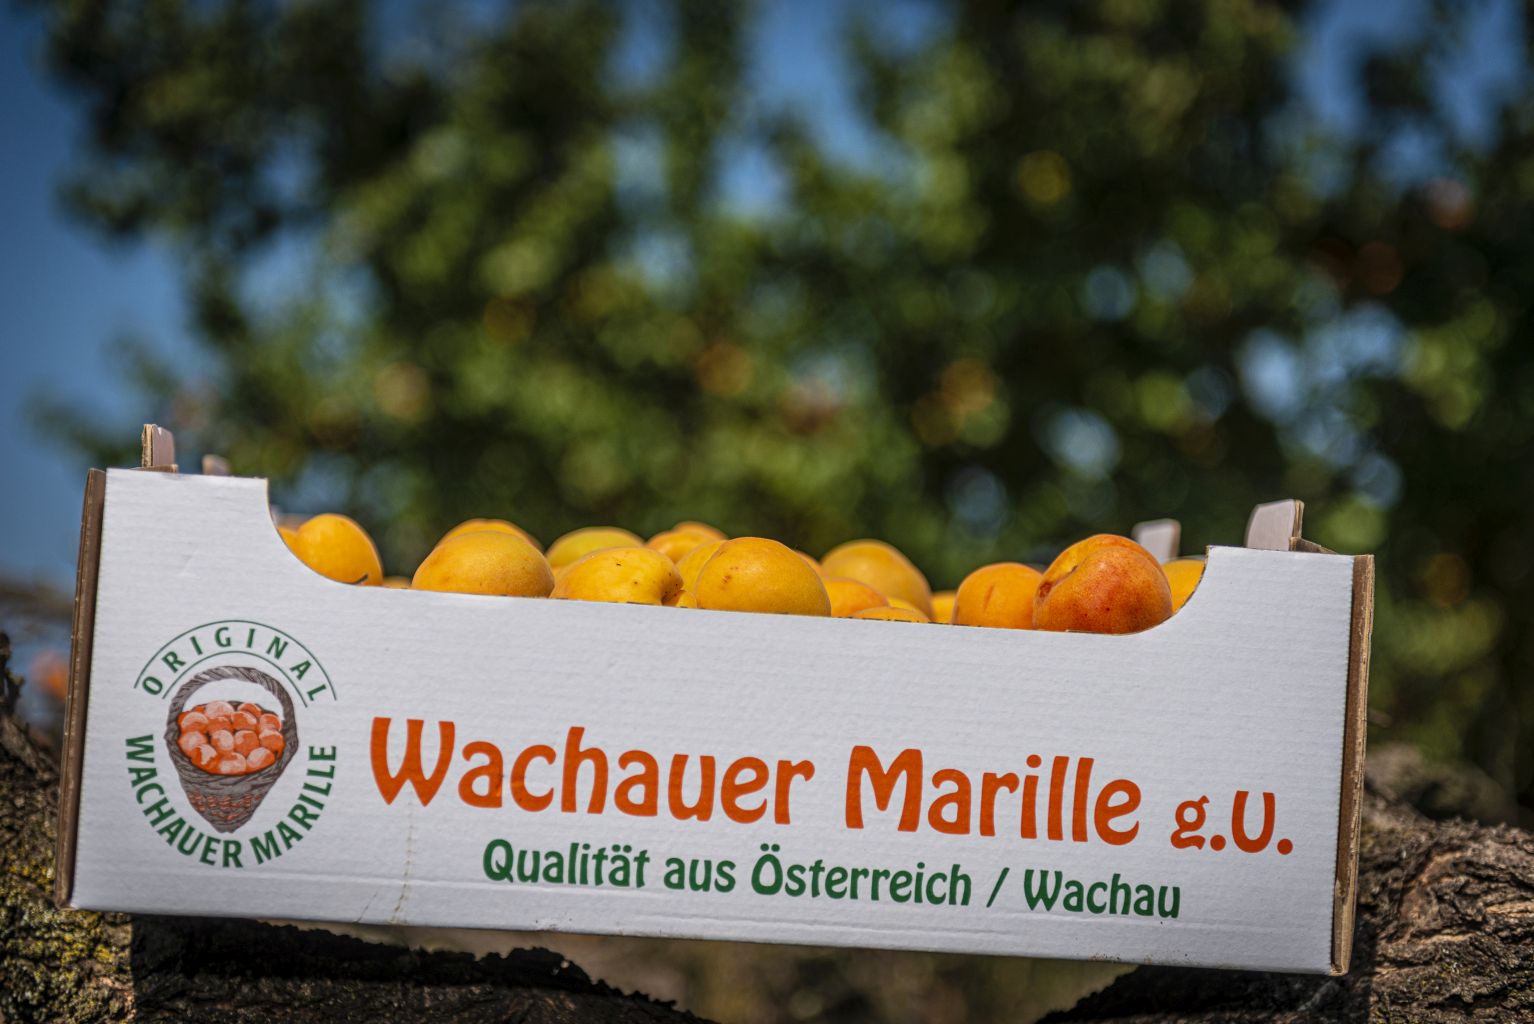 Wachauer Marille